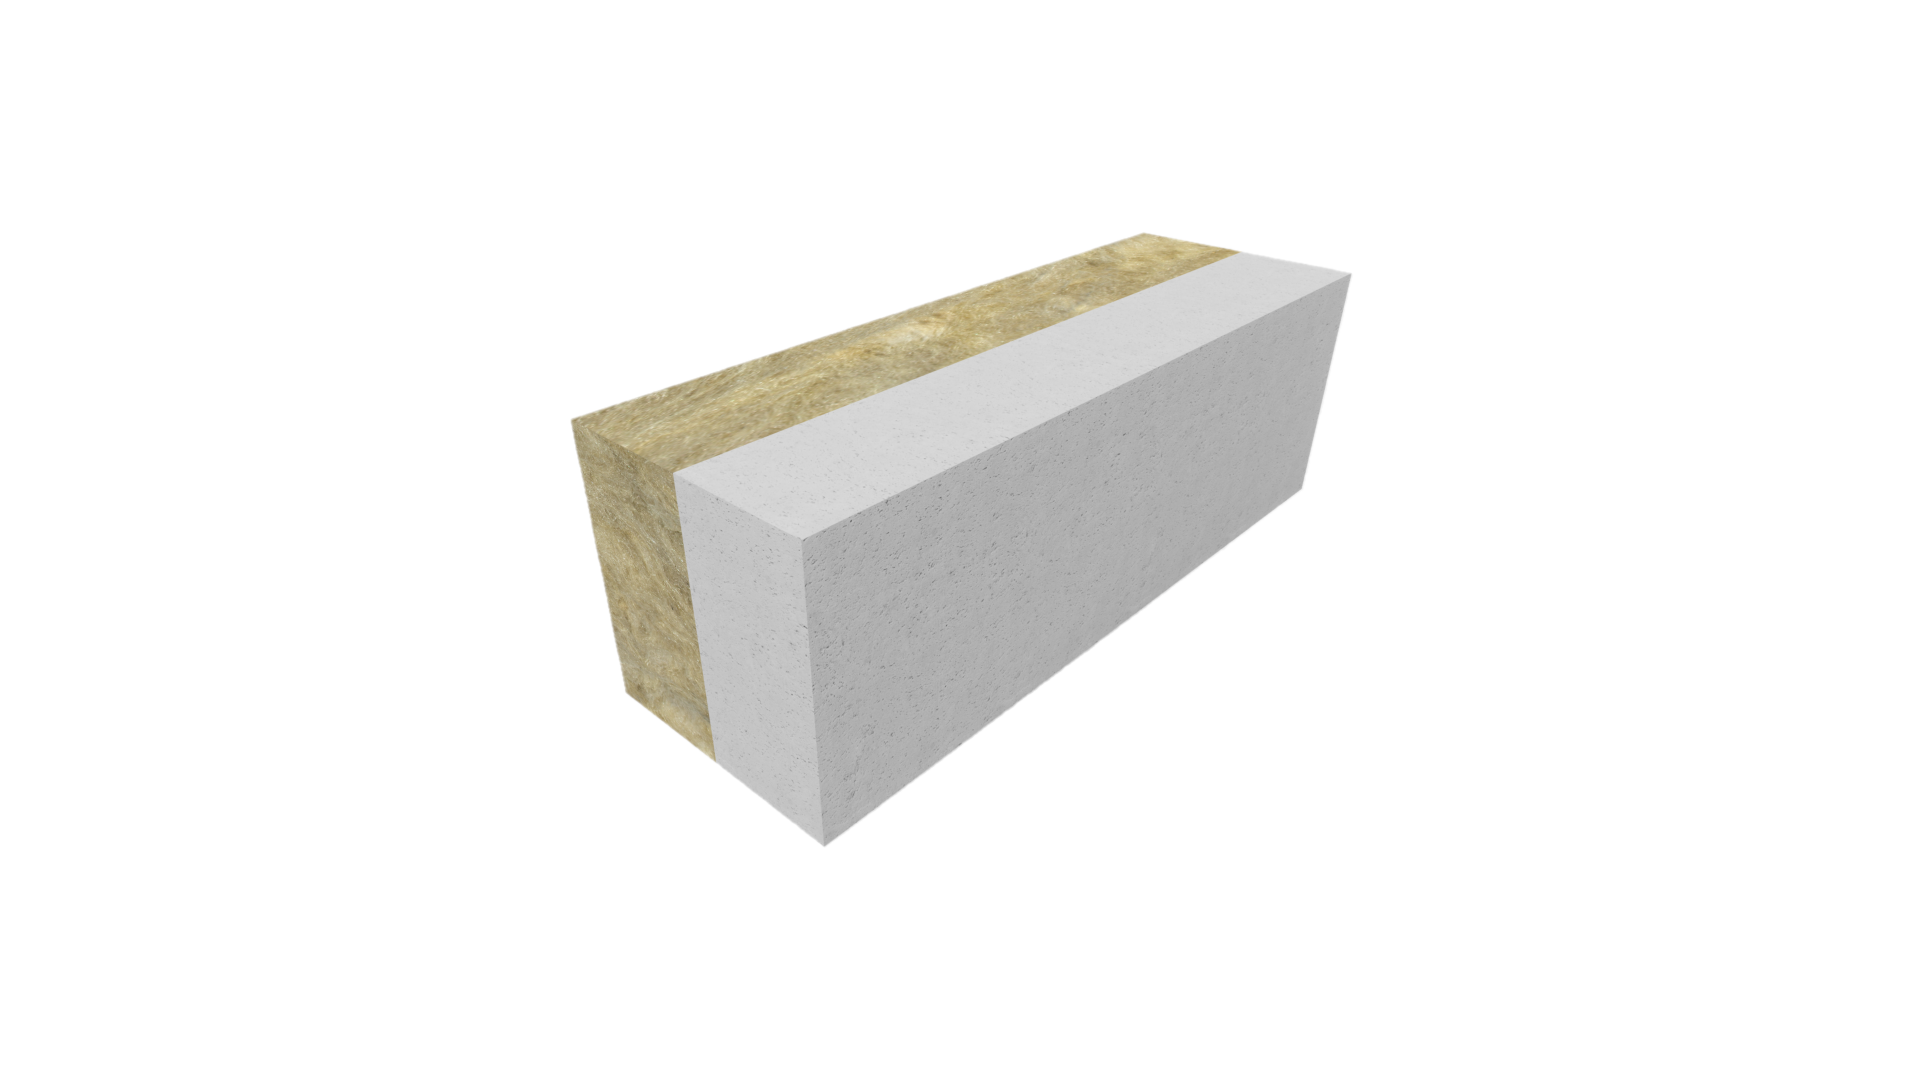 Insulation blocks 200mm R-value 3.39 (per m2)